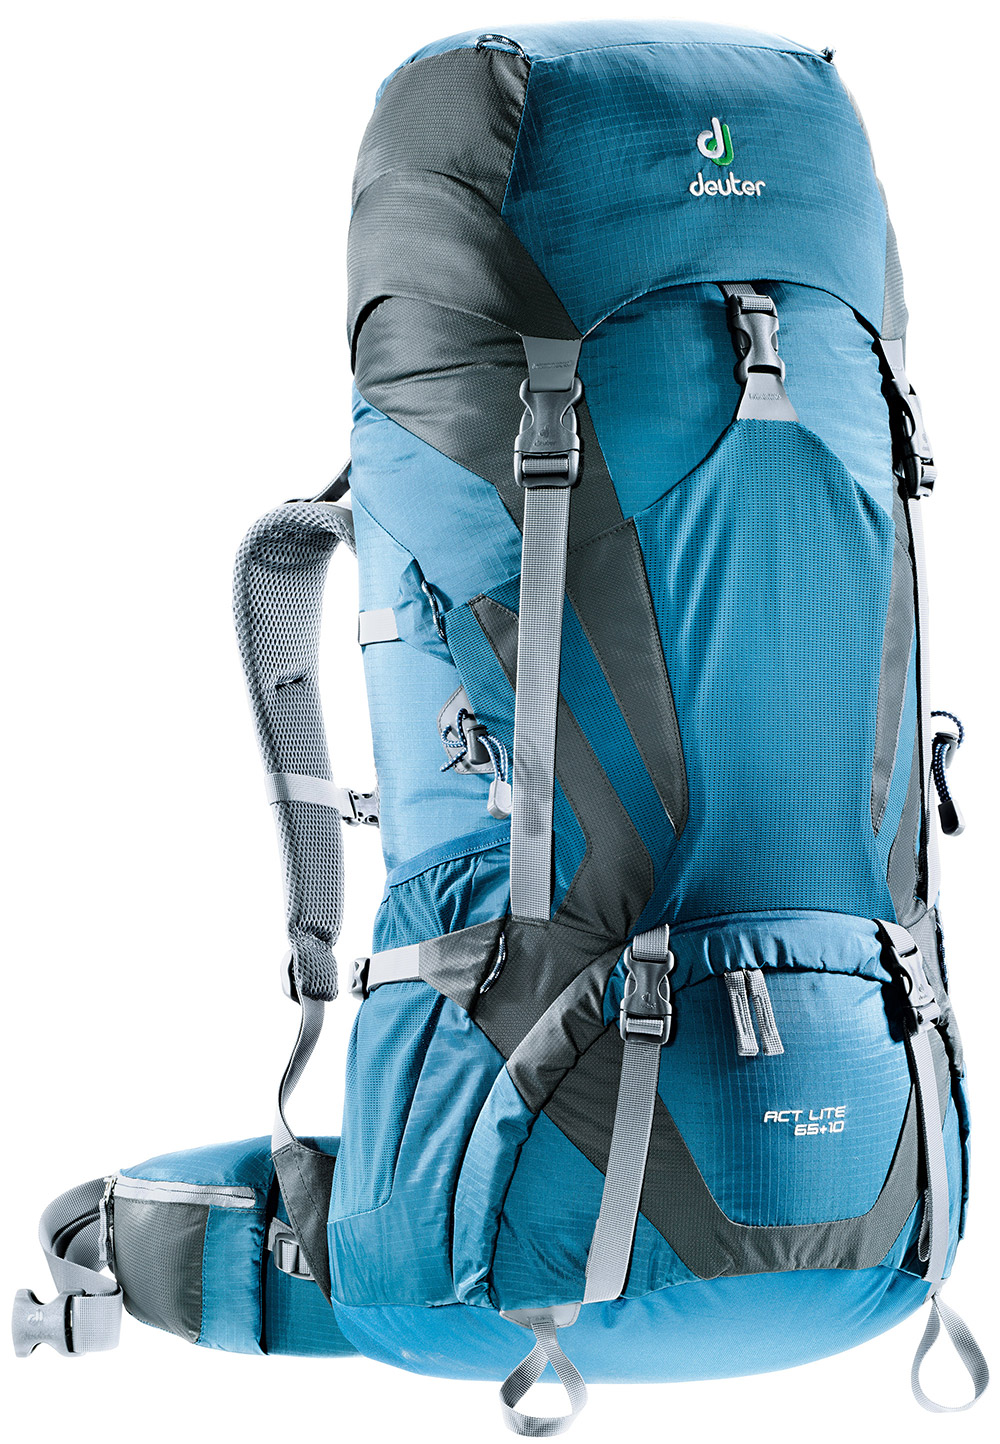 Backpacking Backpacks - Buy Or Rent Denver Ultralight Backpacks